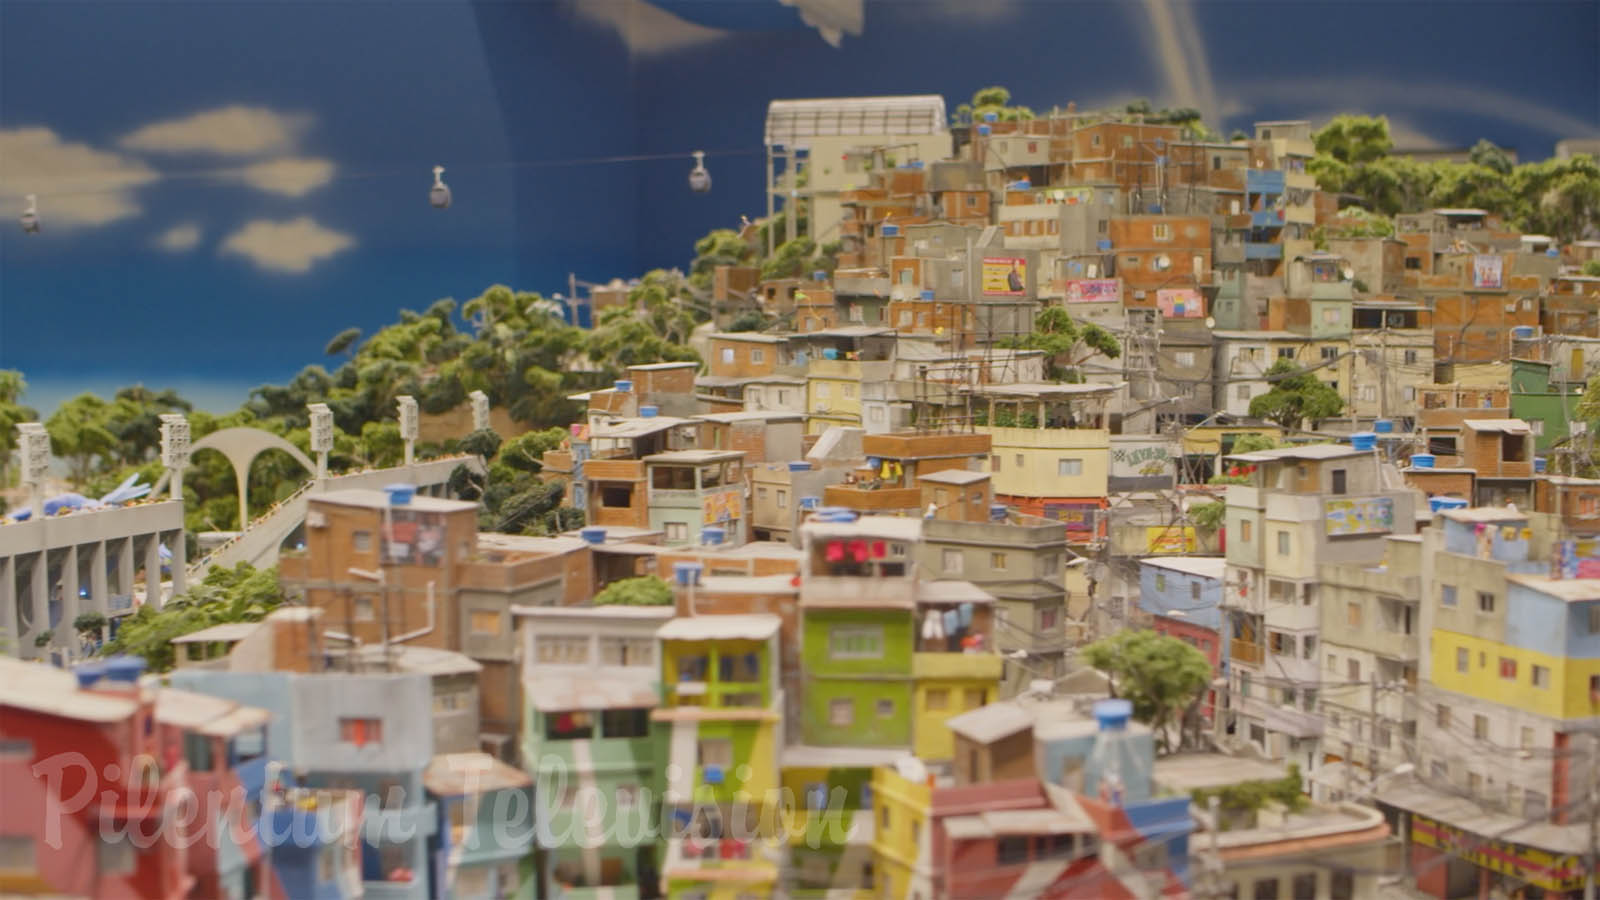 Il fantastico diorama della città di Rio de Janeiro in Brasile: Bellissimo plastico ferroviario in scala HO